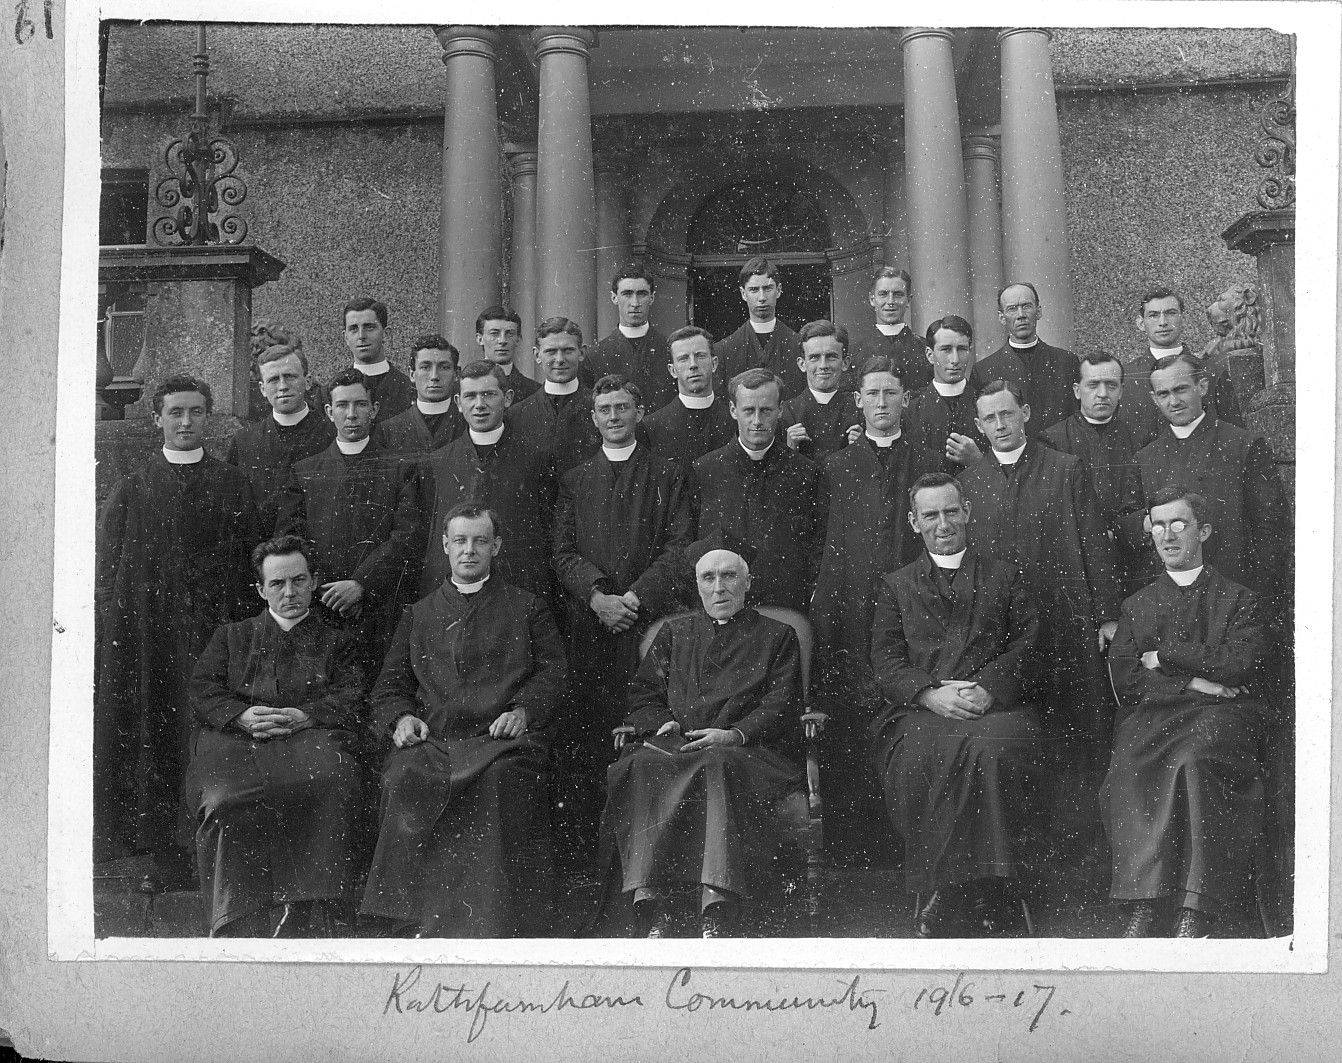 ‘Rathfarnham Community 1916-17′. Le caoinchead Chartlanna Íosánaigh na hÉireann.